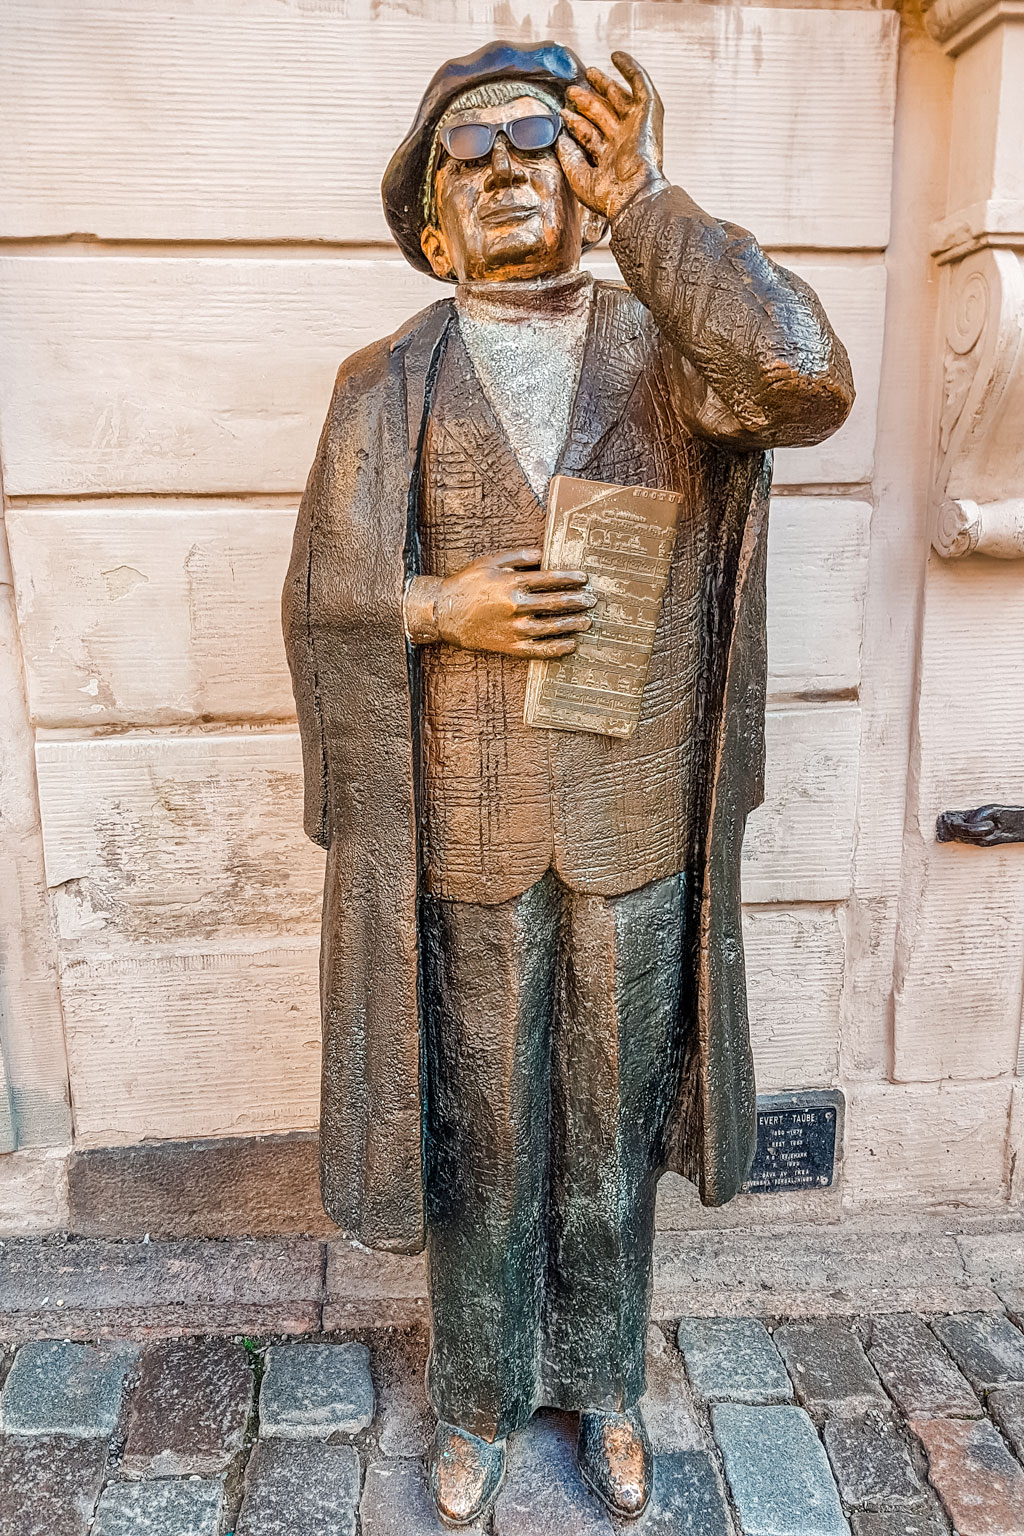 Statue of Evert Taube